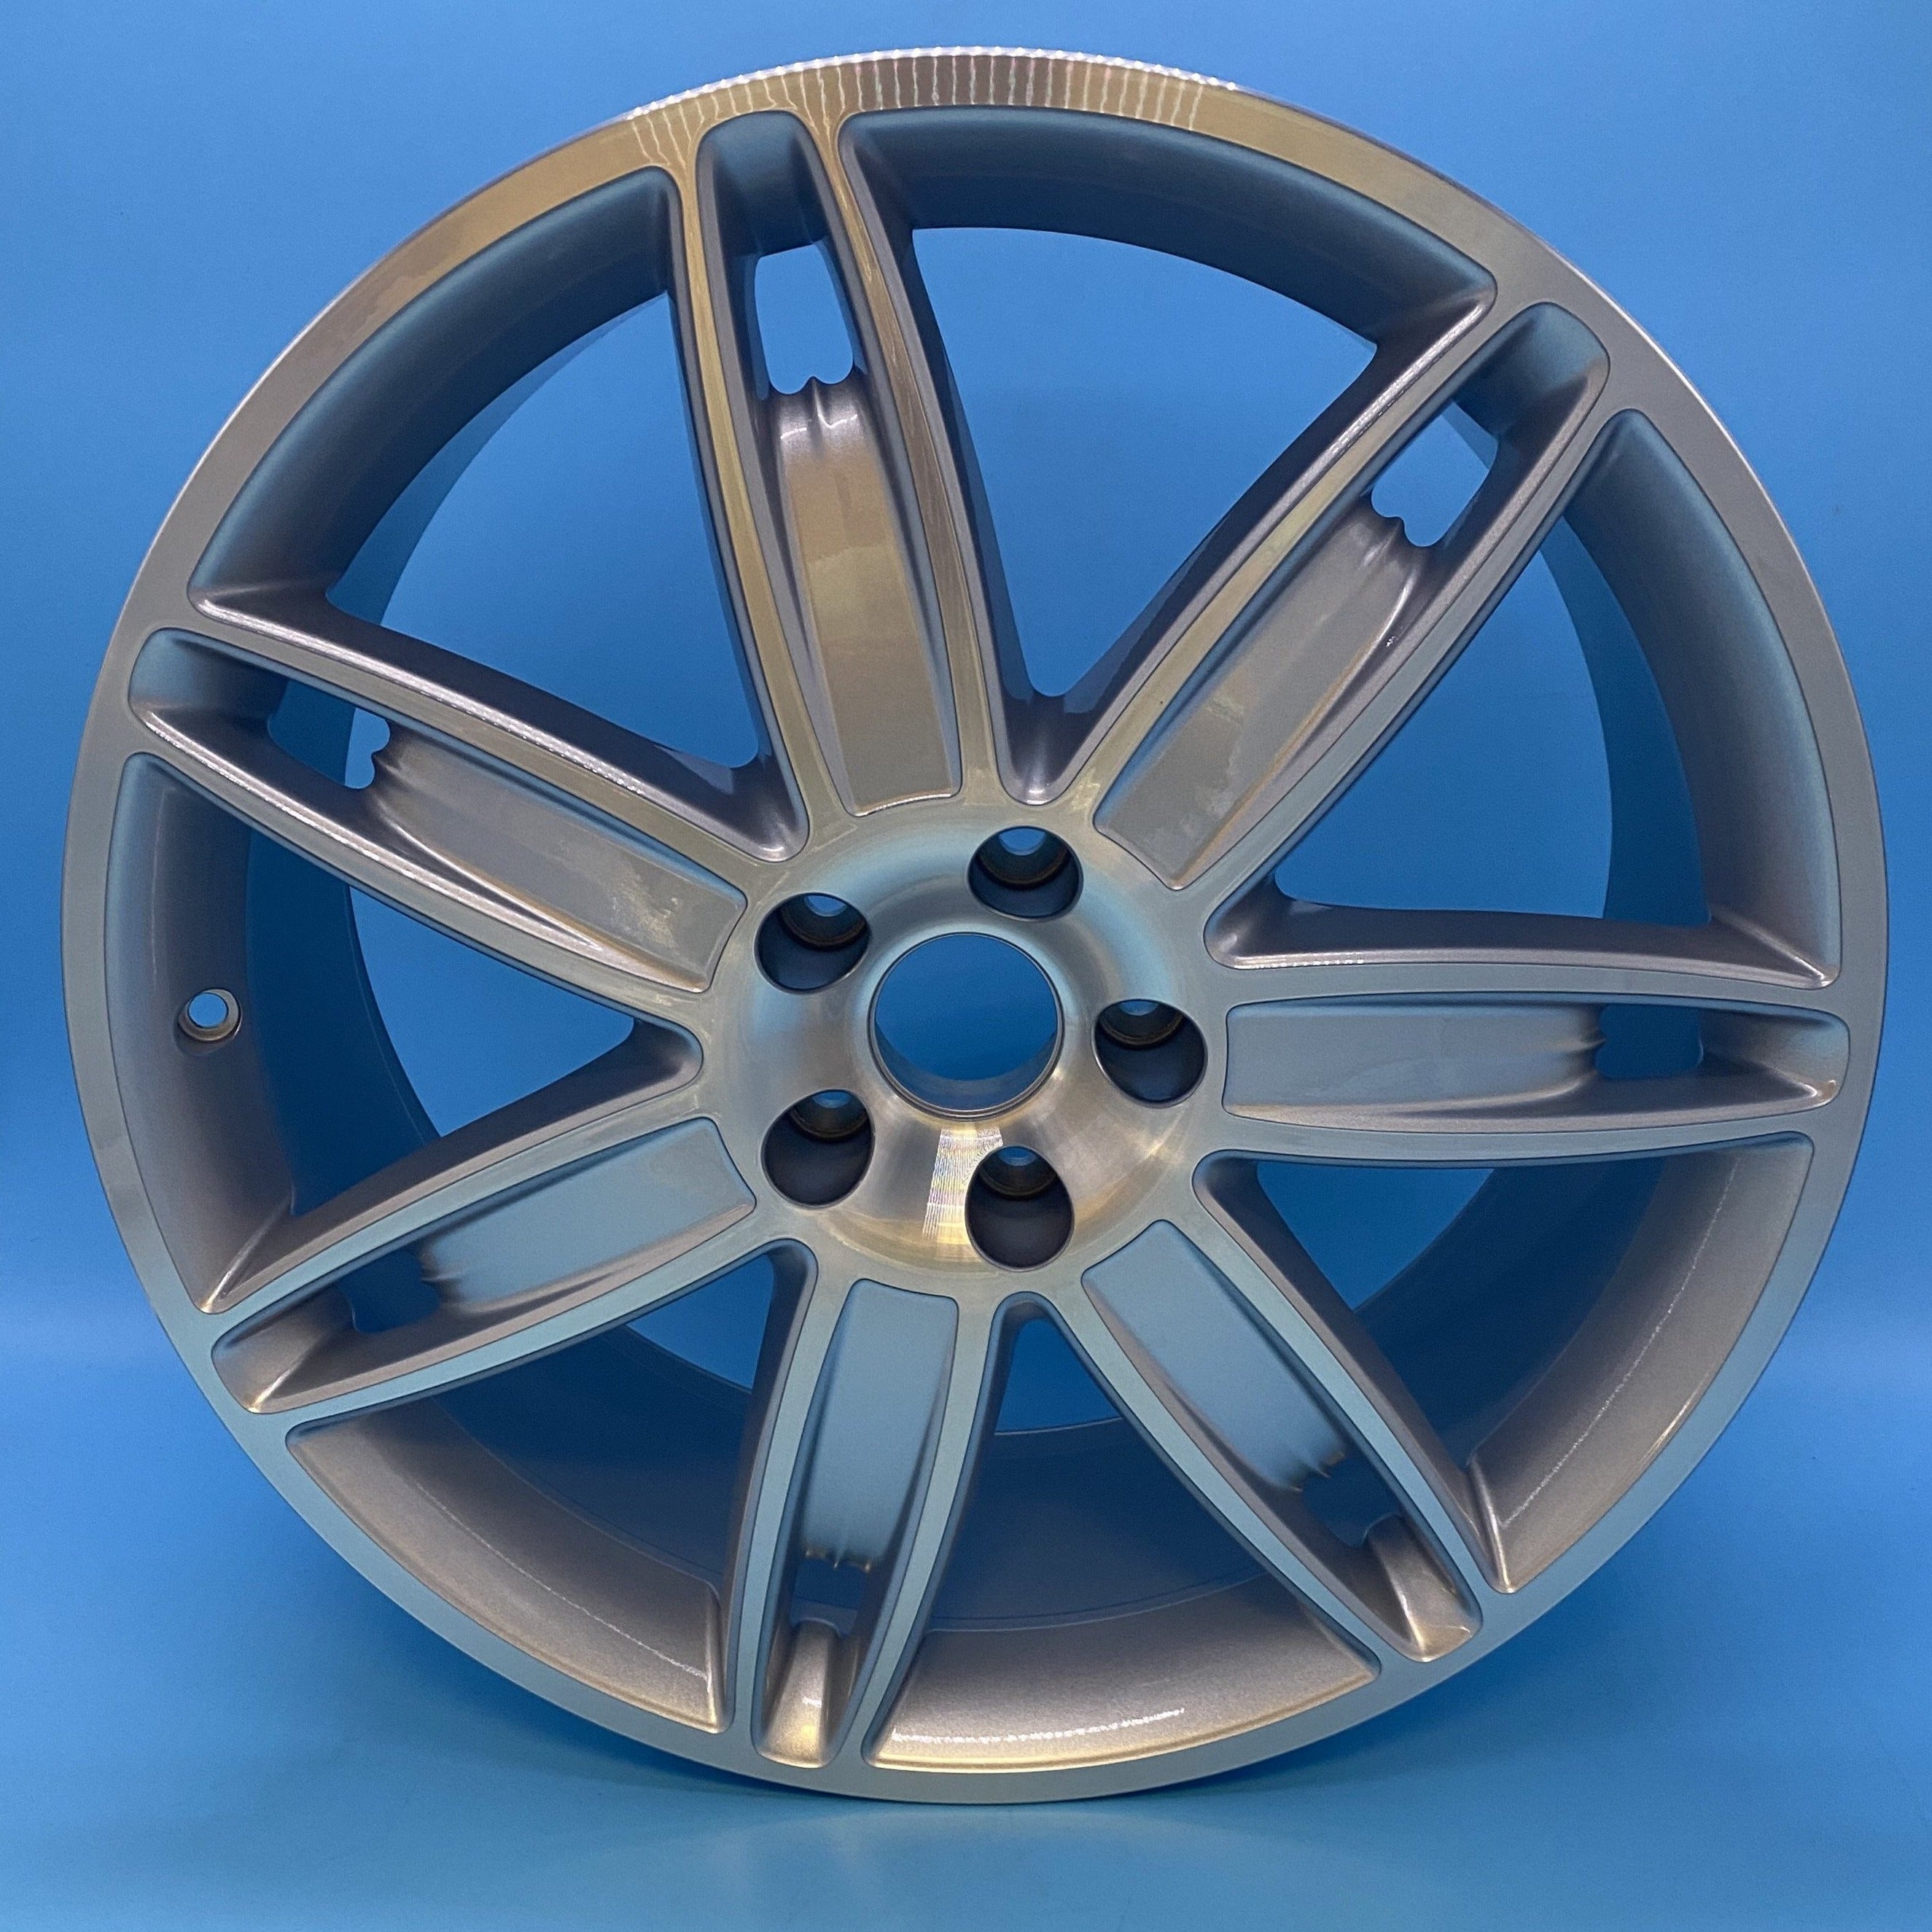 Maserati QTP 2014 - Set of 20" Rear Alloy Wheels Rims - 670013453